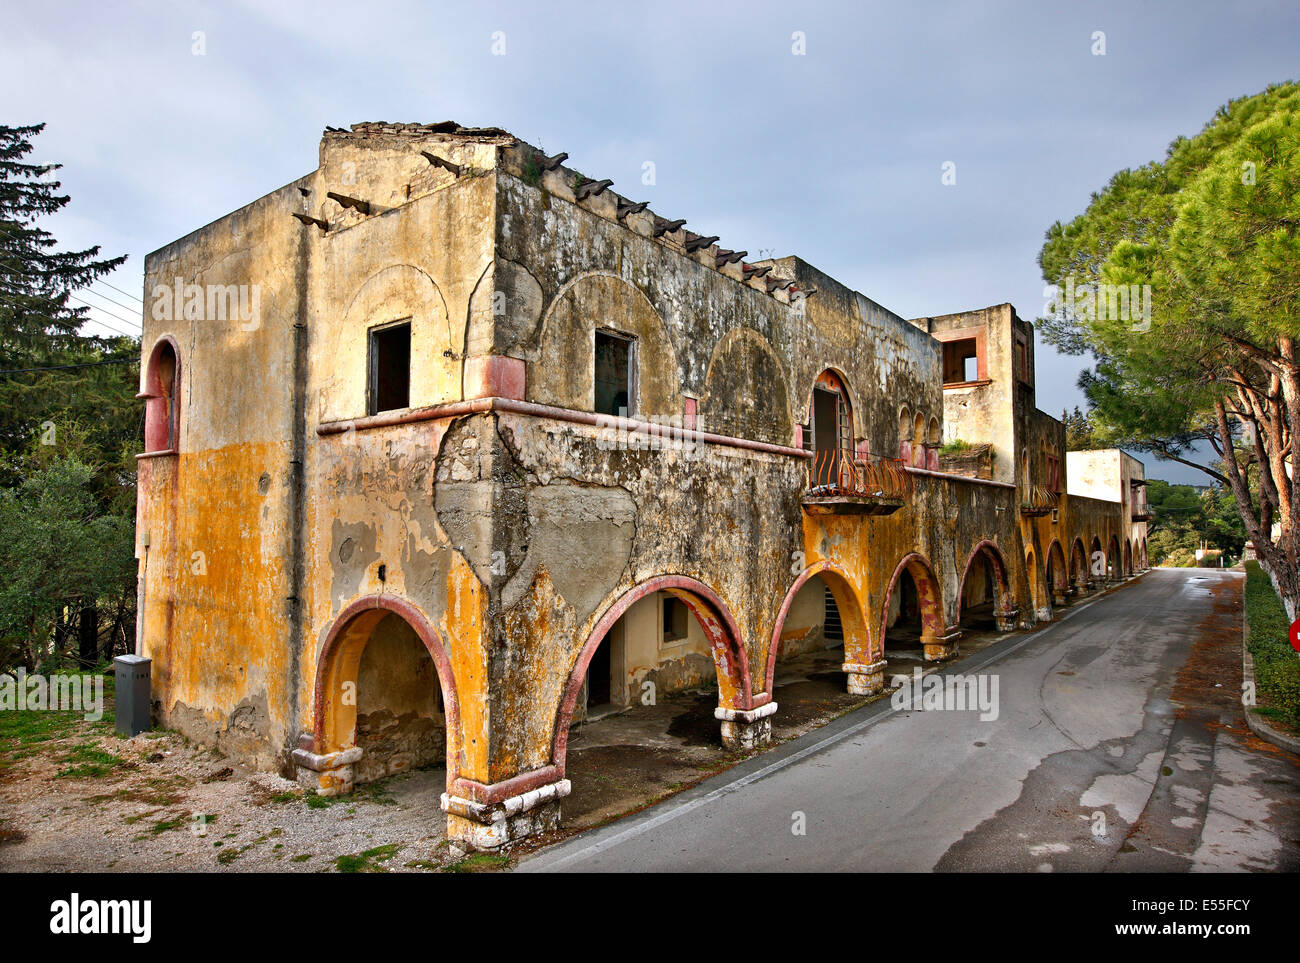 Der "vergessene" Dorf Eleousa, bekannt als eines der "Italienischen" Dörfer von Rhodos Insel, Dodekanes, Ägäis, Griechenland Stockfoto